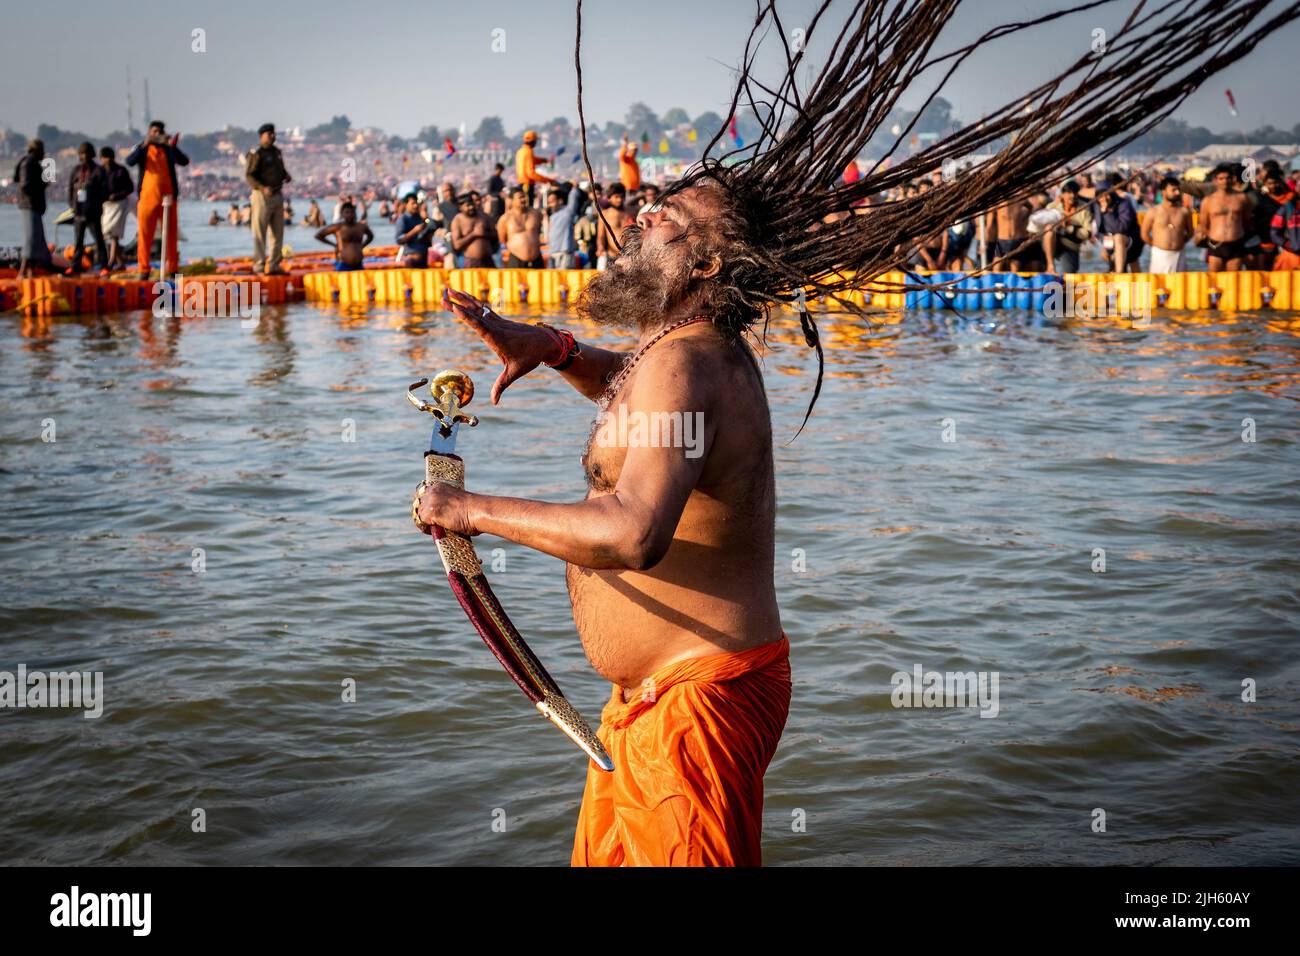 Un homme hindou avec de longues dreadlocks et portant une épée baigne au Triveni Sangam au Kumbh Mela Festival à Allahabad (Prayagraj), en Inde. Banque D'Images